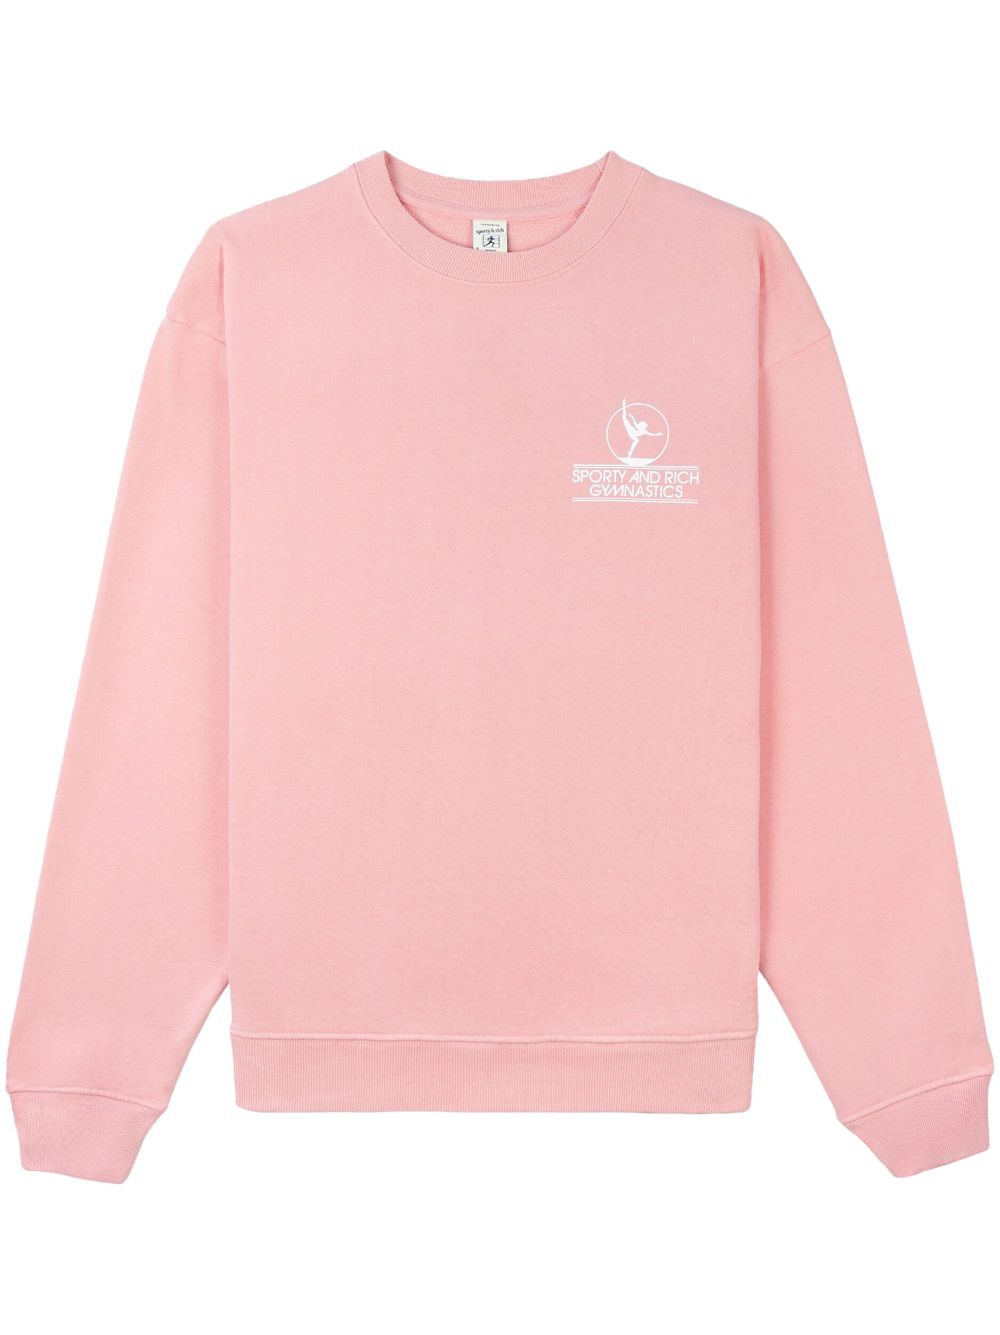 Sporty & Rich Gymnastics logo-print sweatshirt - Pink von Sporty & Rich